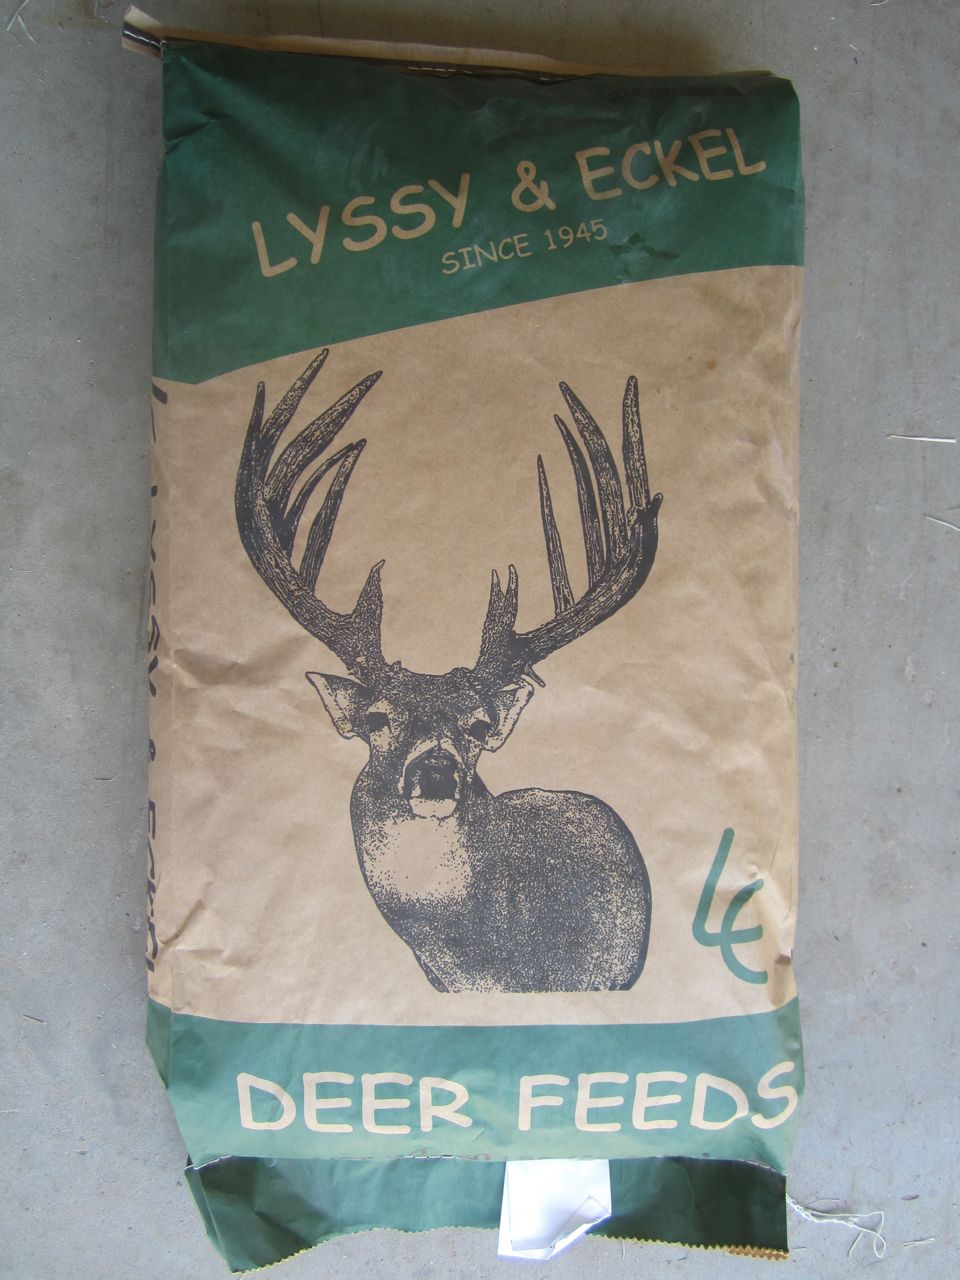 deer pellets feed